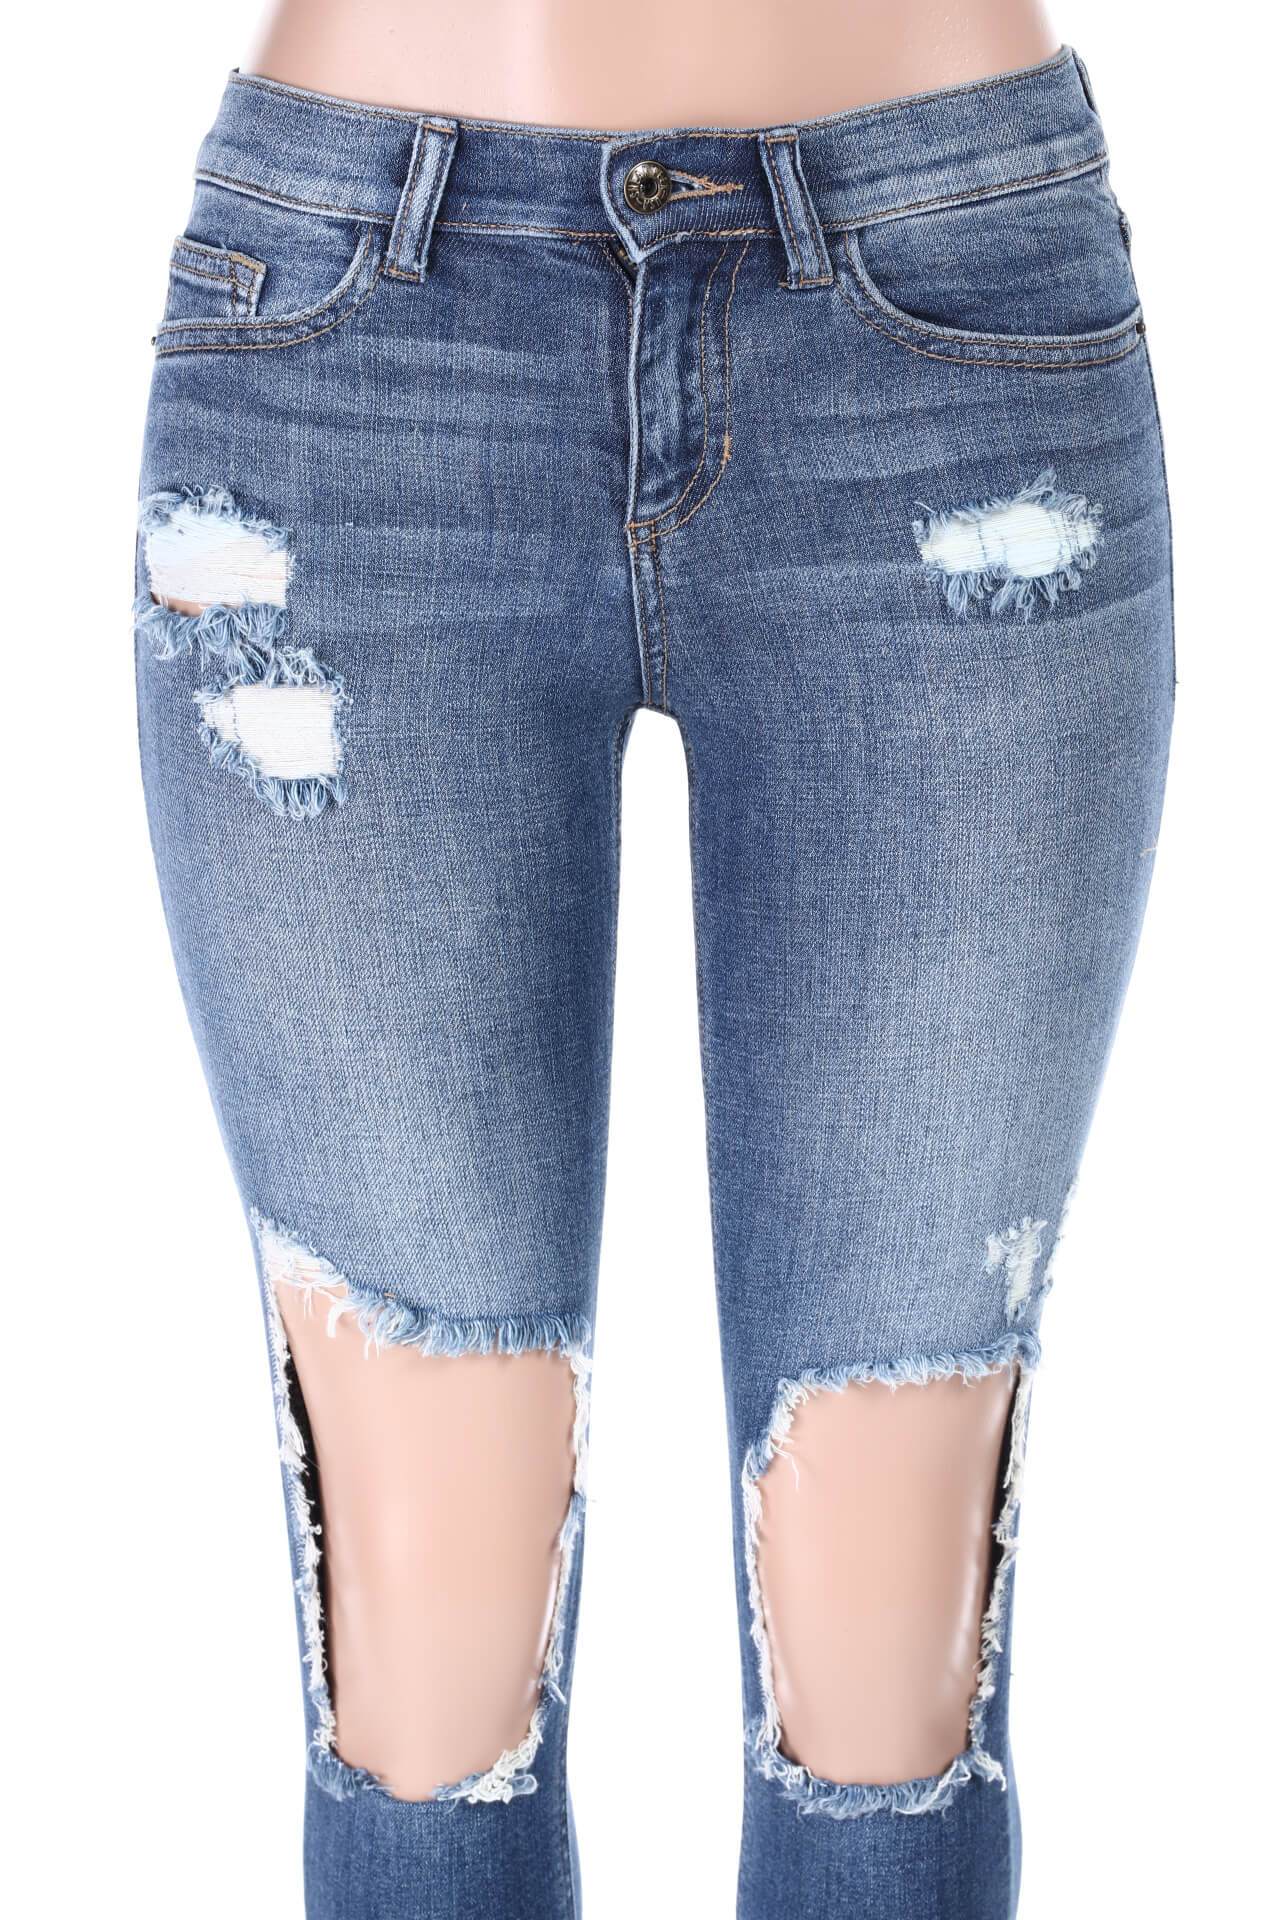 Salt Tree Women's Sneak Peek Destructed Detail Mid Rise Skinny Jeans ...